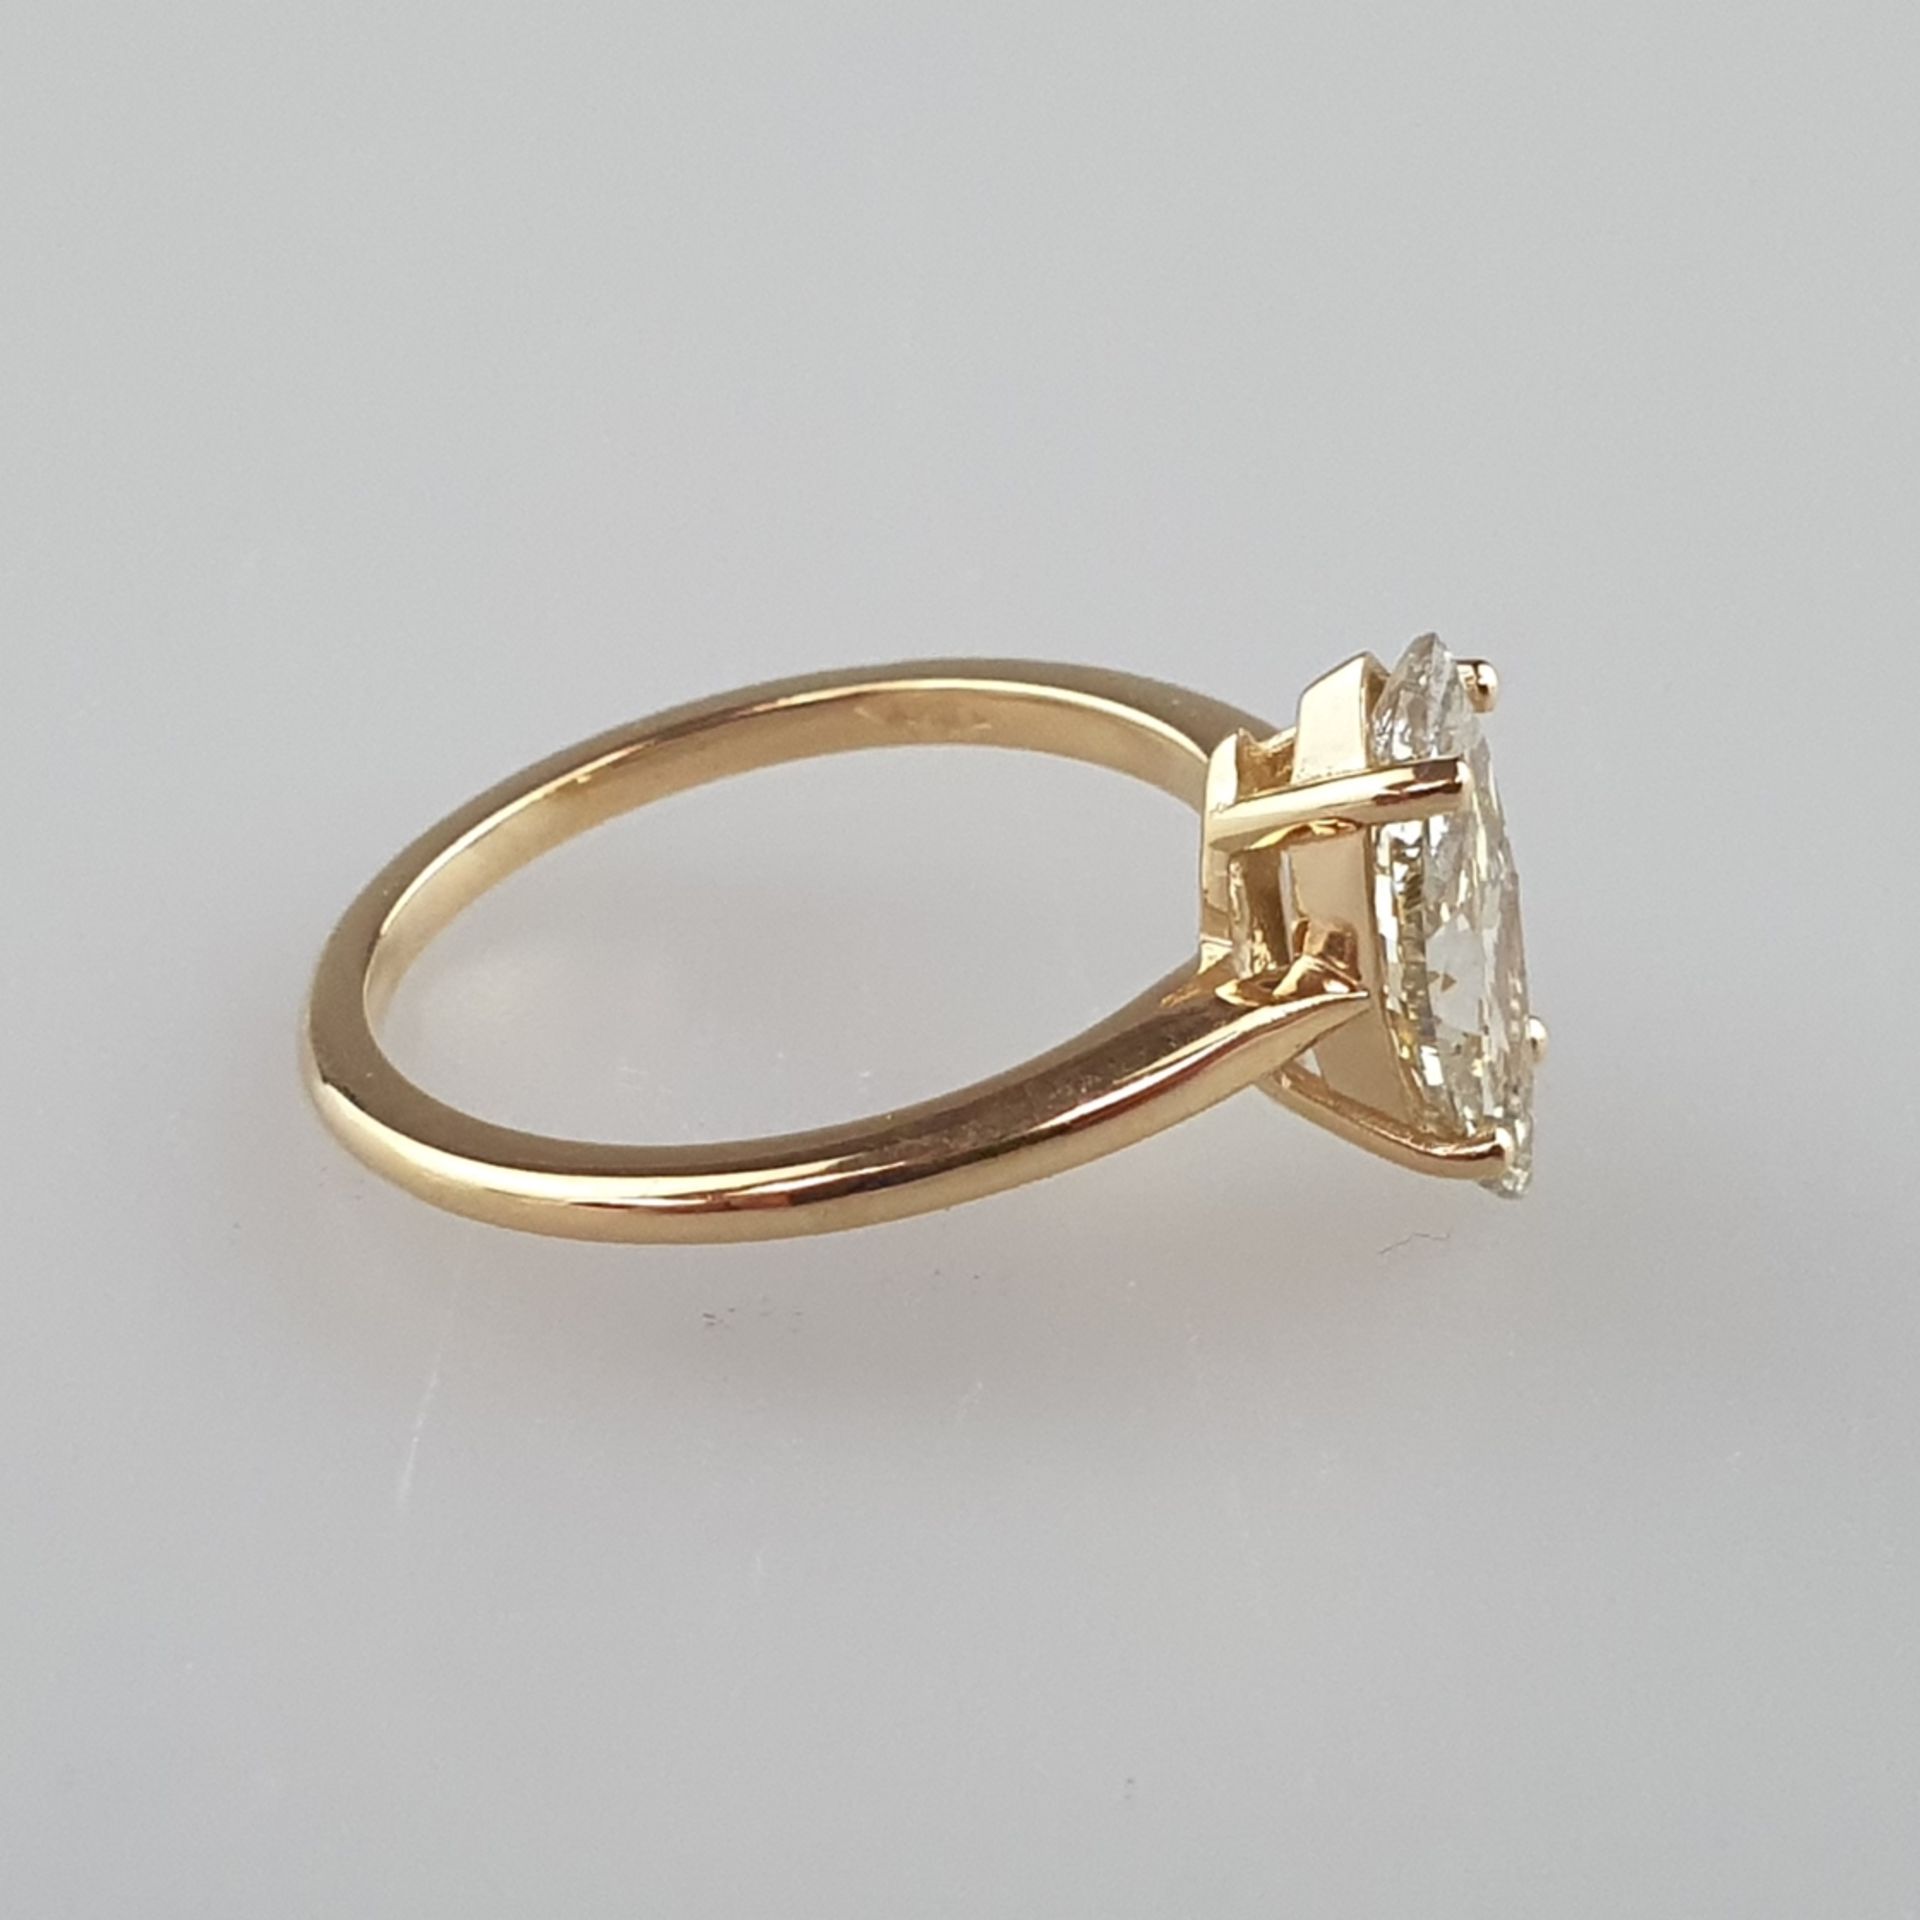 Eleganter Solitärring - Gelbgold 750/000, gestempelt, mittig besetzt mit 1 größeren Diamanten im Ma - Bild 3 aus 5